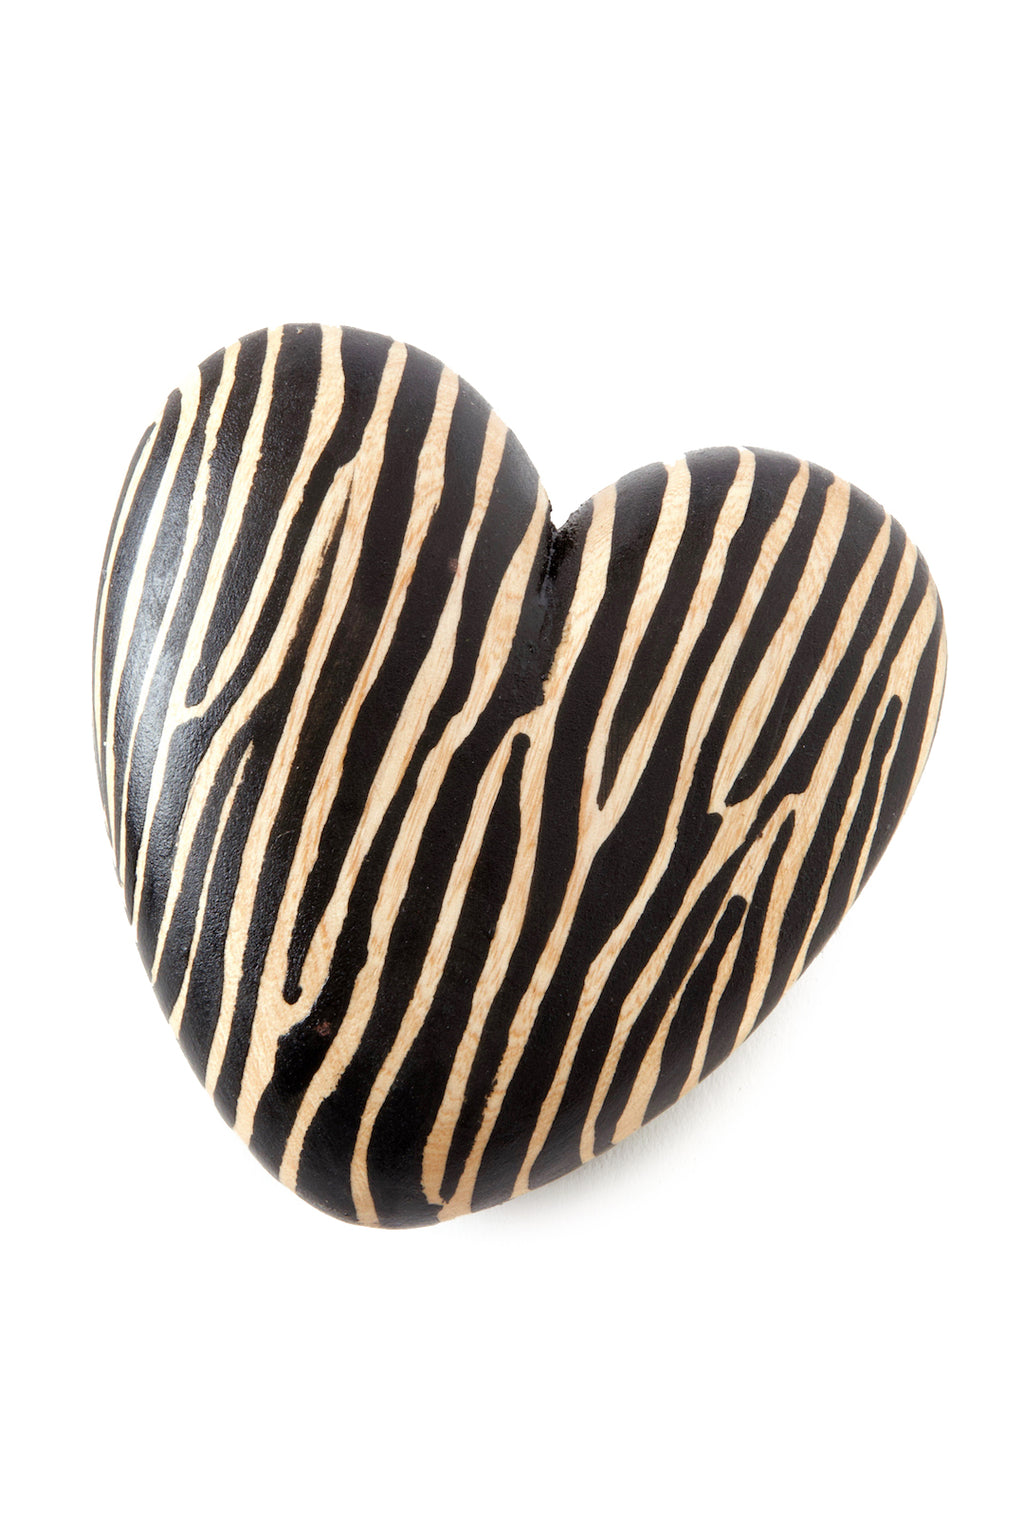 Kenyan Jacaranda Wood Zebra Print Heart